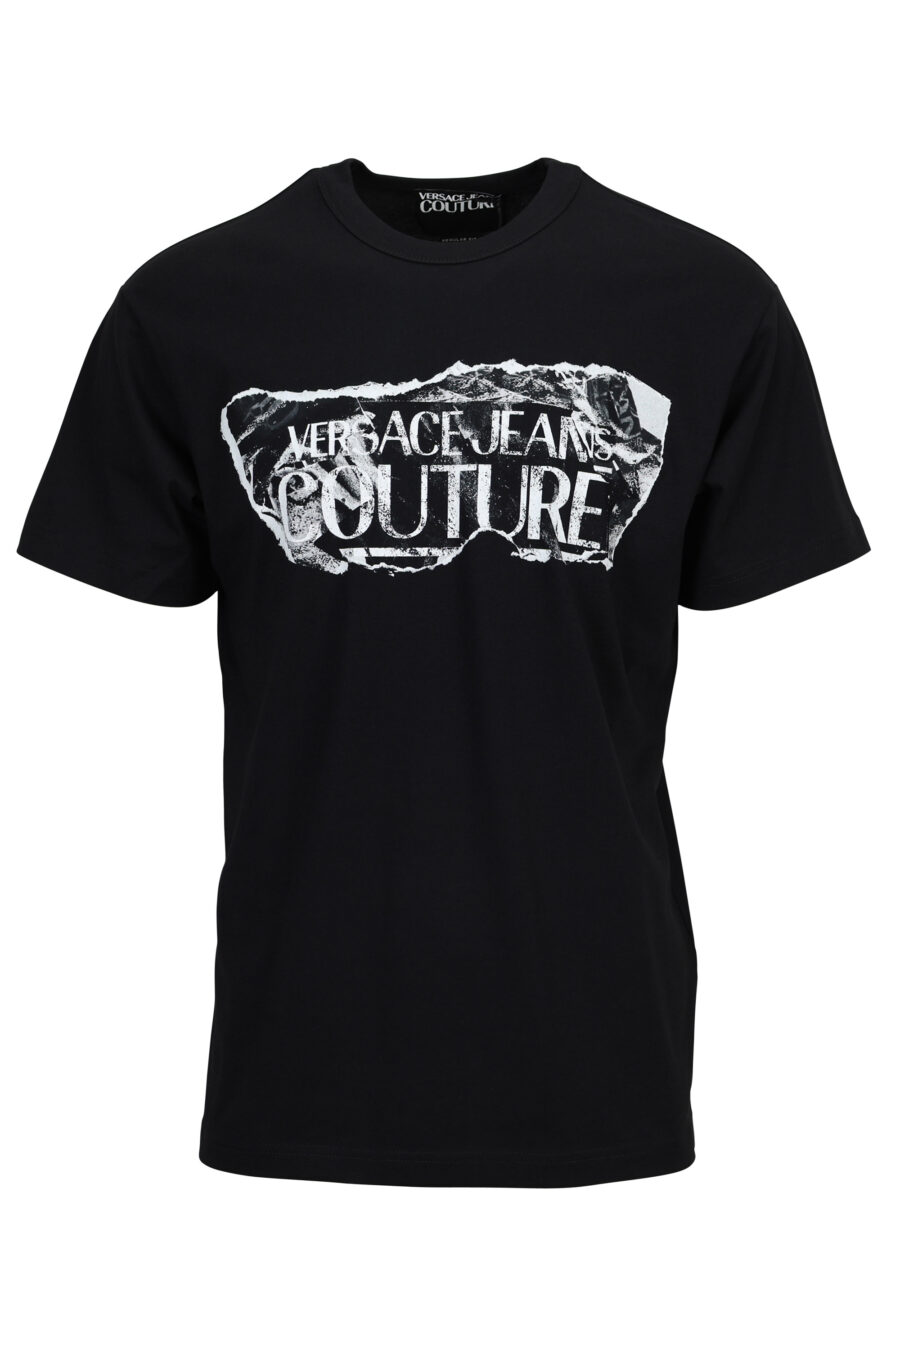 Camiseta negra con maxilogo barroco rasgado - 8052019603170